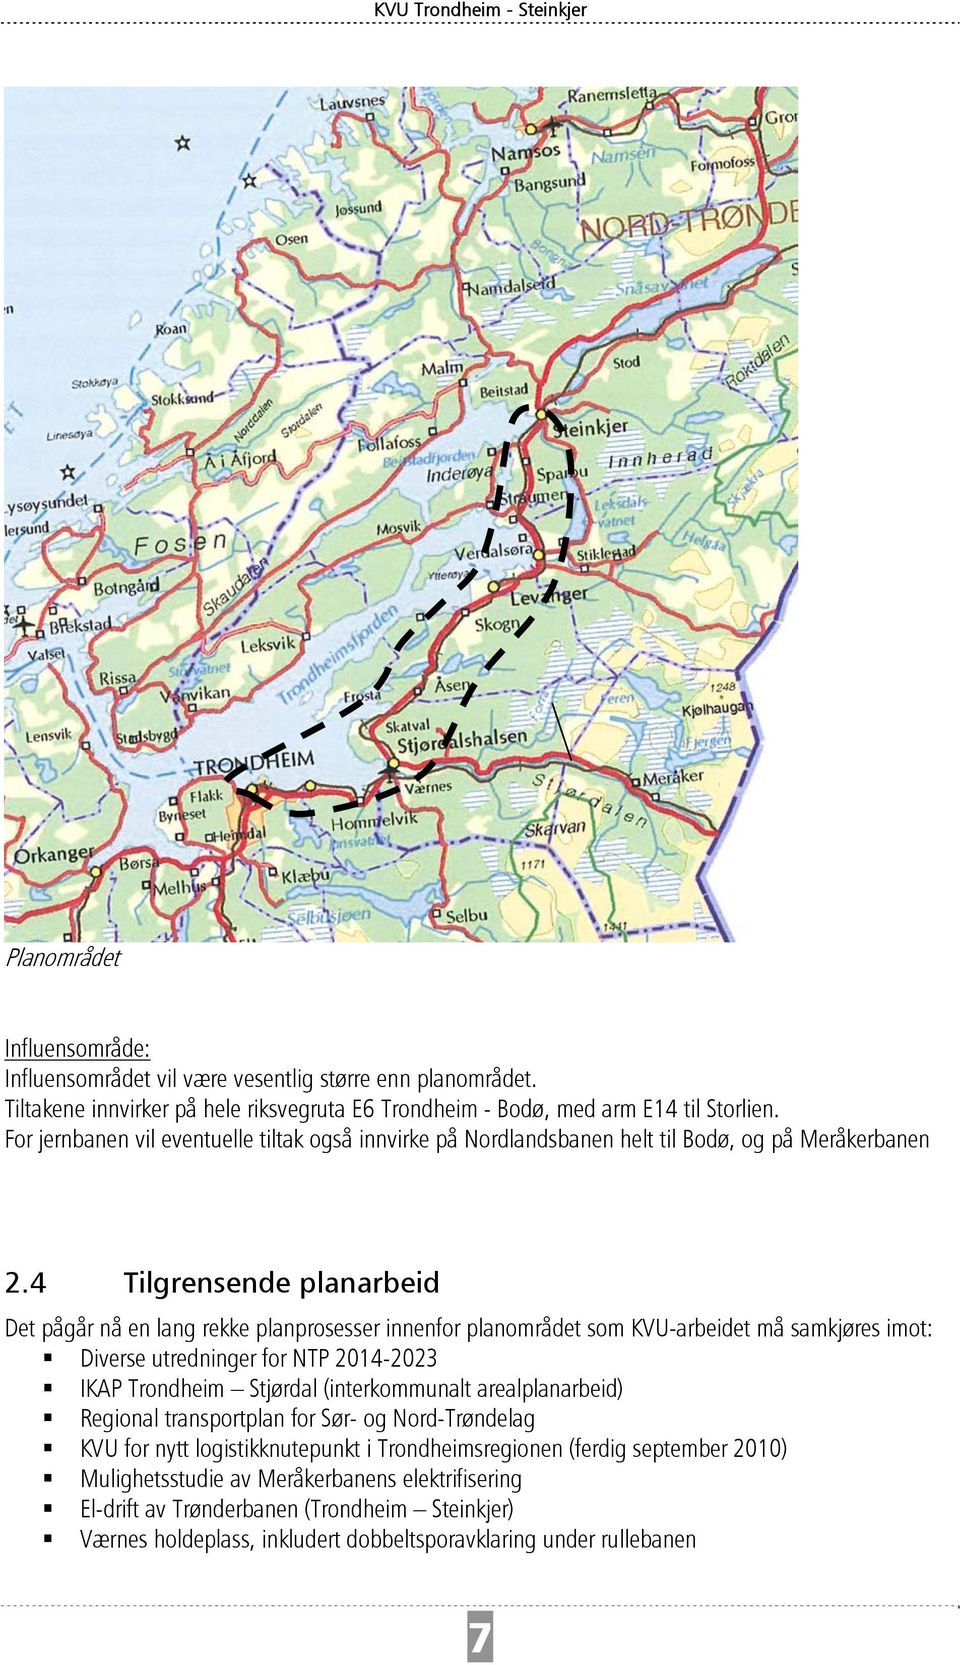 4 Tilgrensende planarbeid Det pågår nå en lang rekke planprosesser innenfor planområdet som KVU-arbeidet må samkjøres imot: Diverse utredninger for NTP 2014-2023 IKAP Trondheim Stjørdal